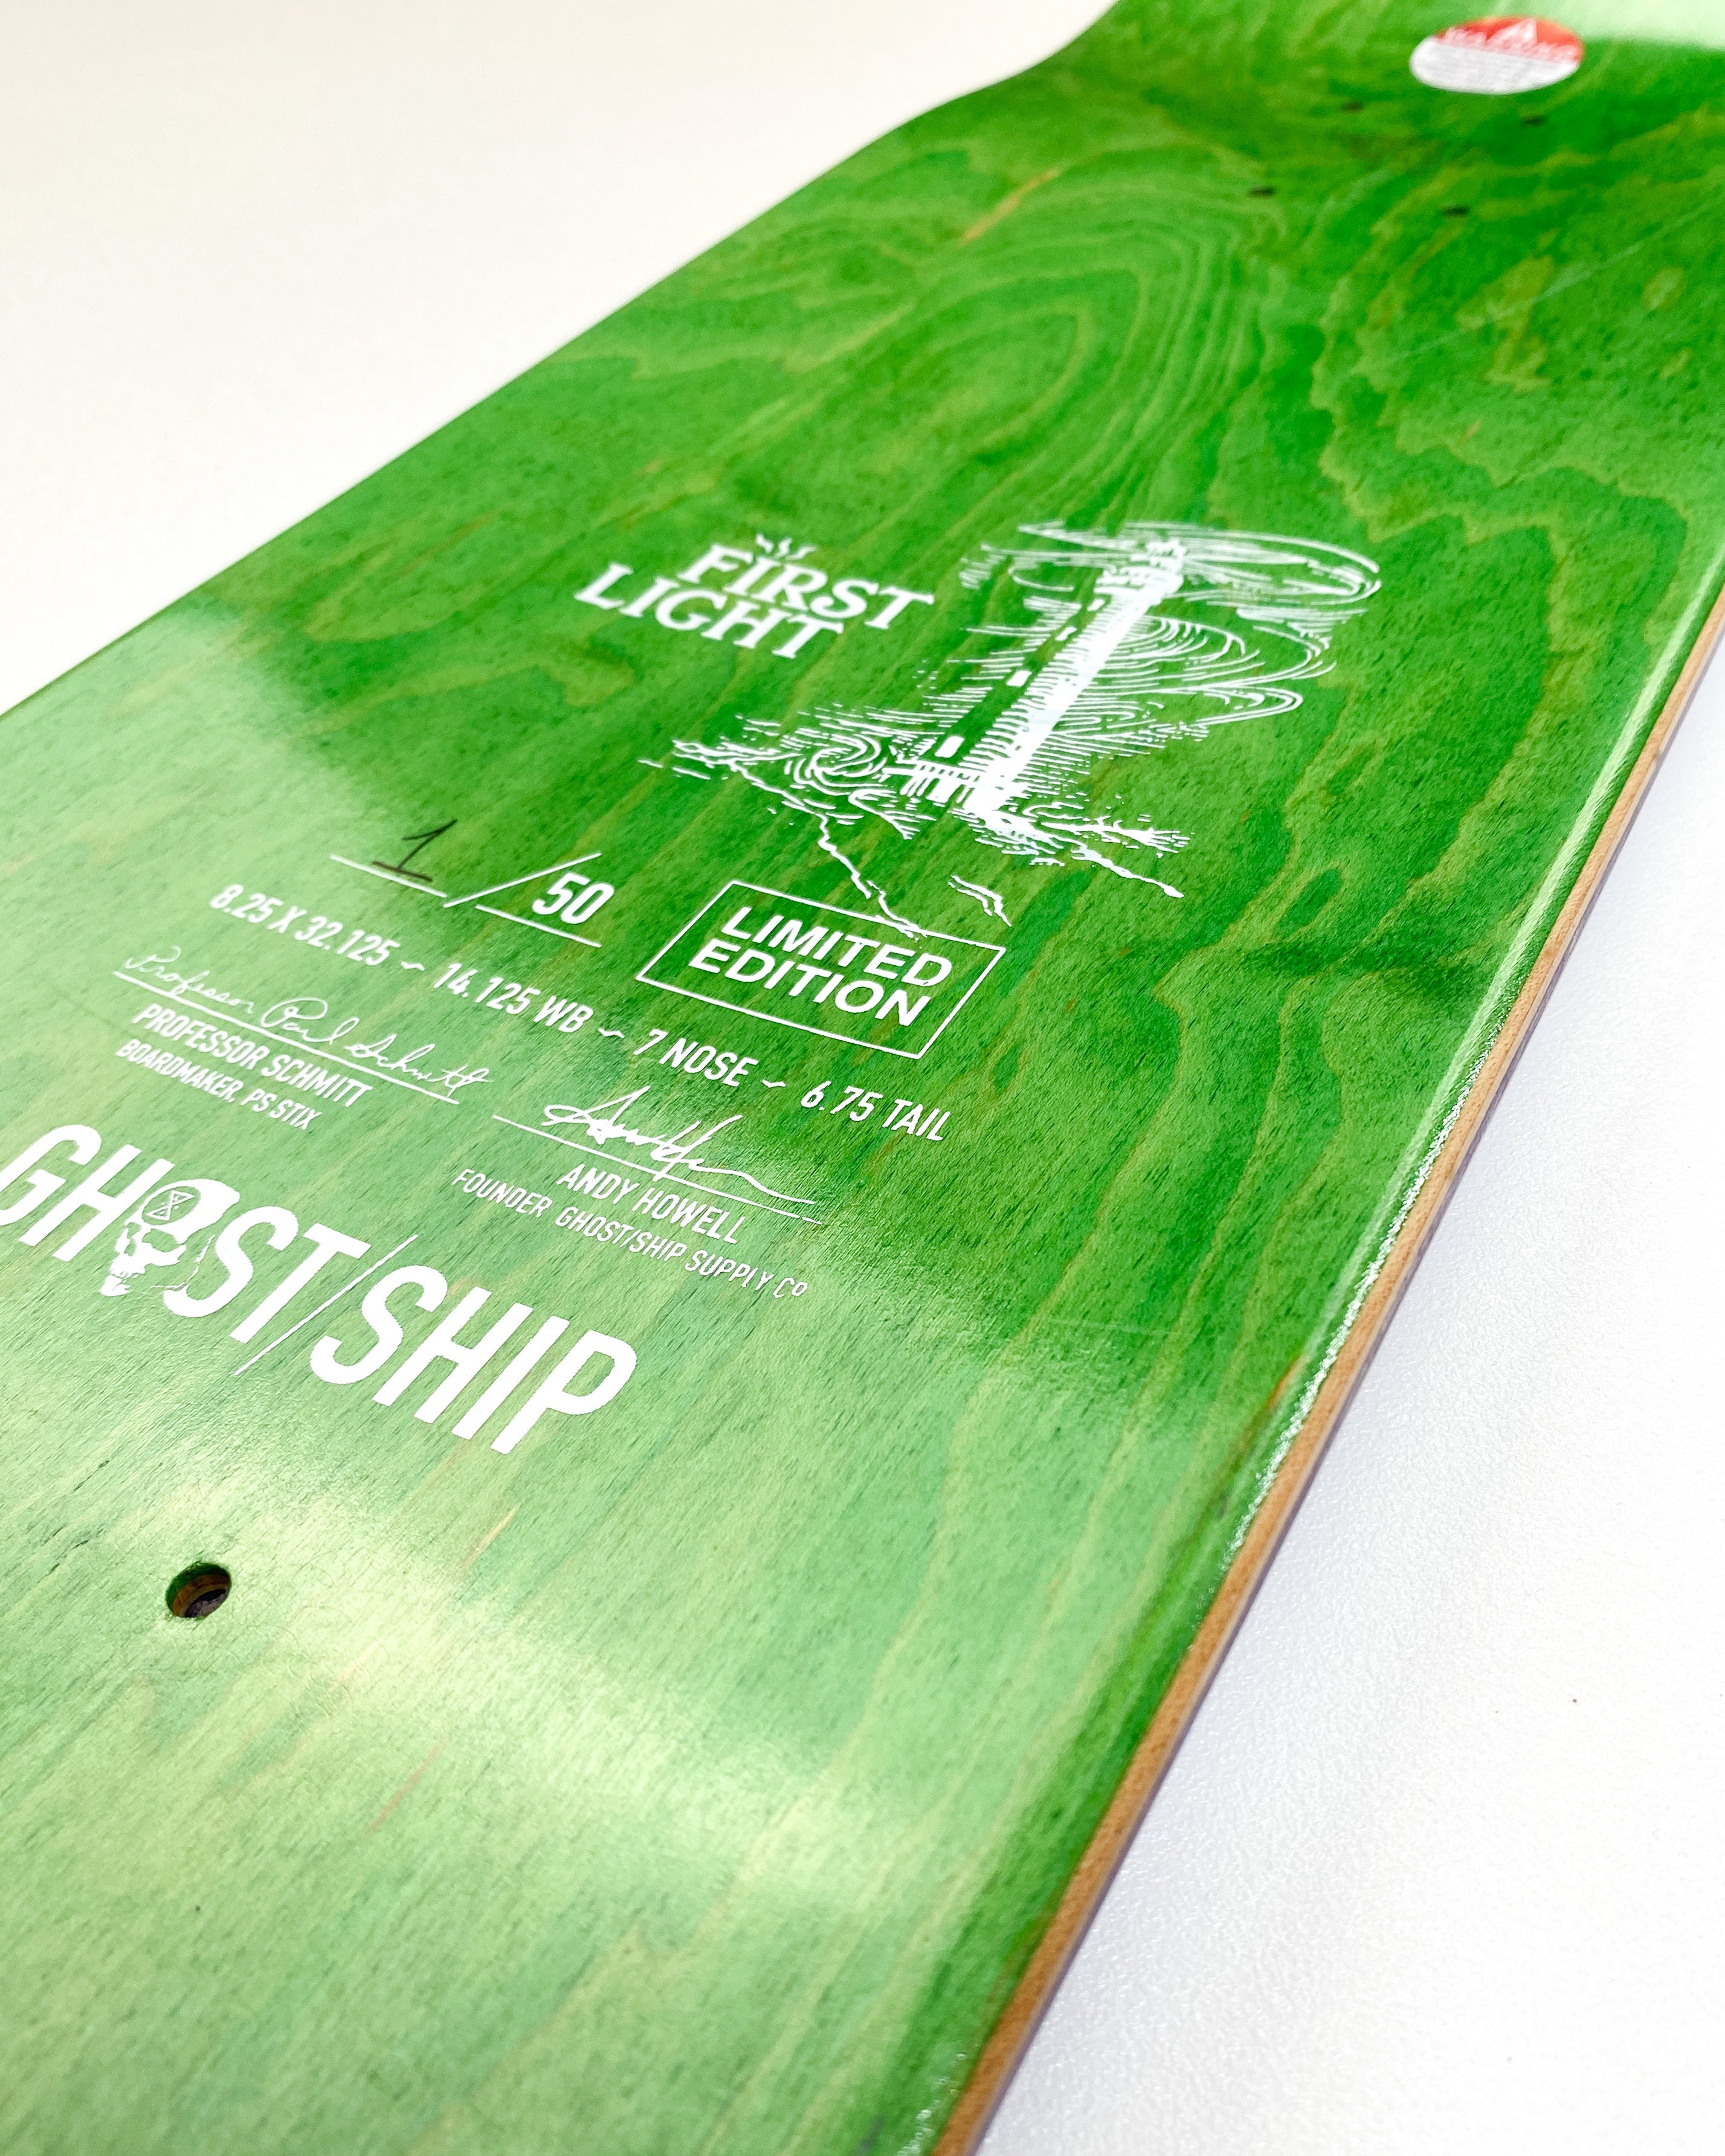 First Light Skate Deck - GHOSTSHIP.Supply